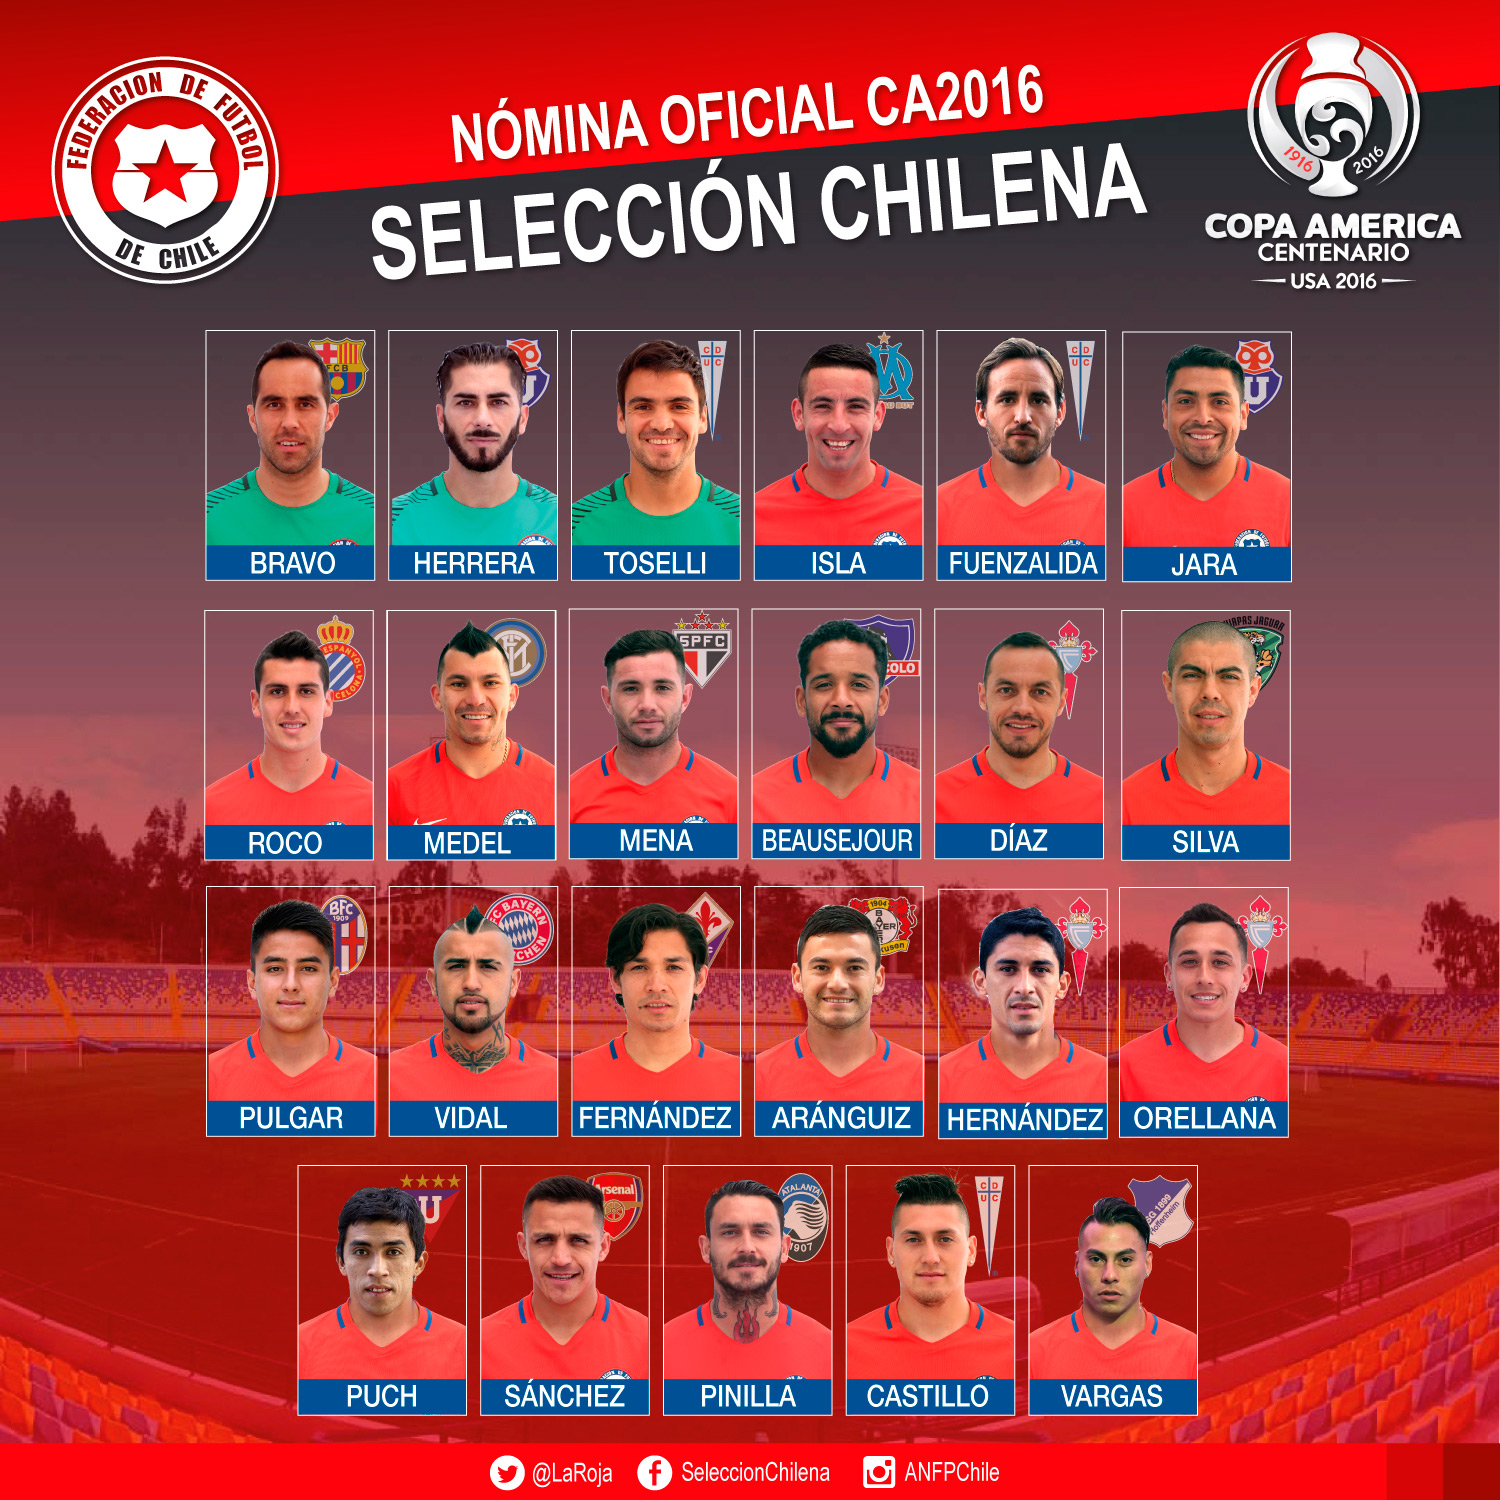 Nómina de la selección chilena para la Copa América Centenario 2016